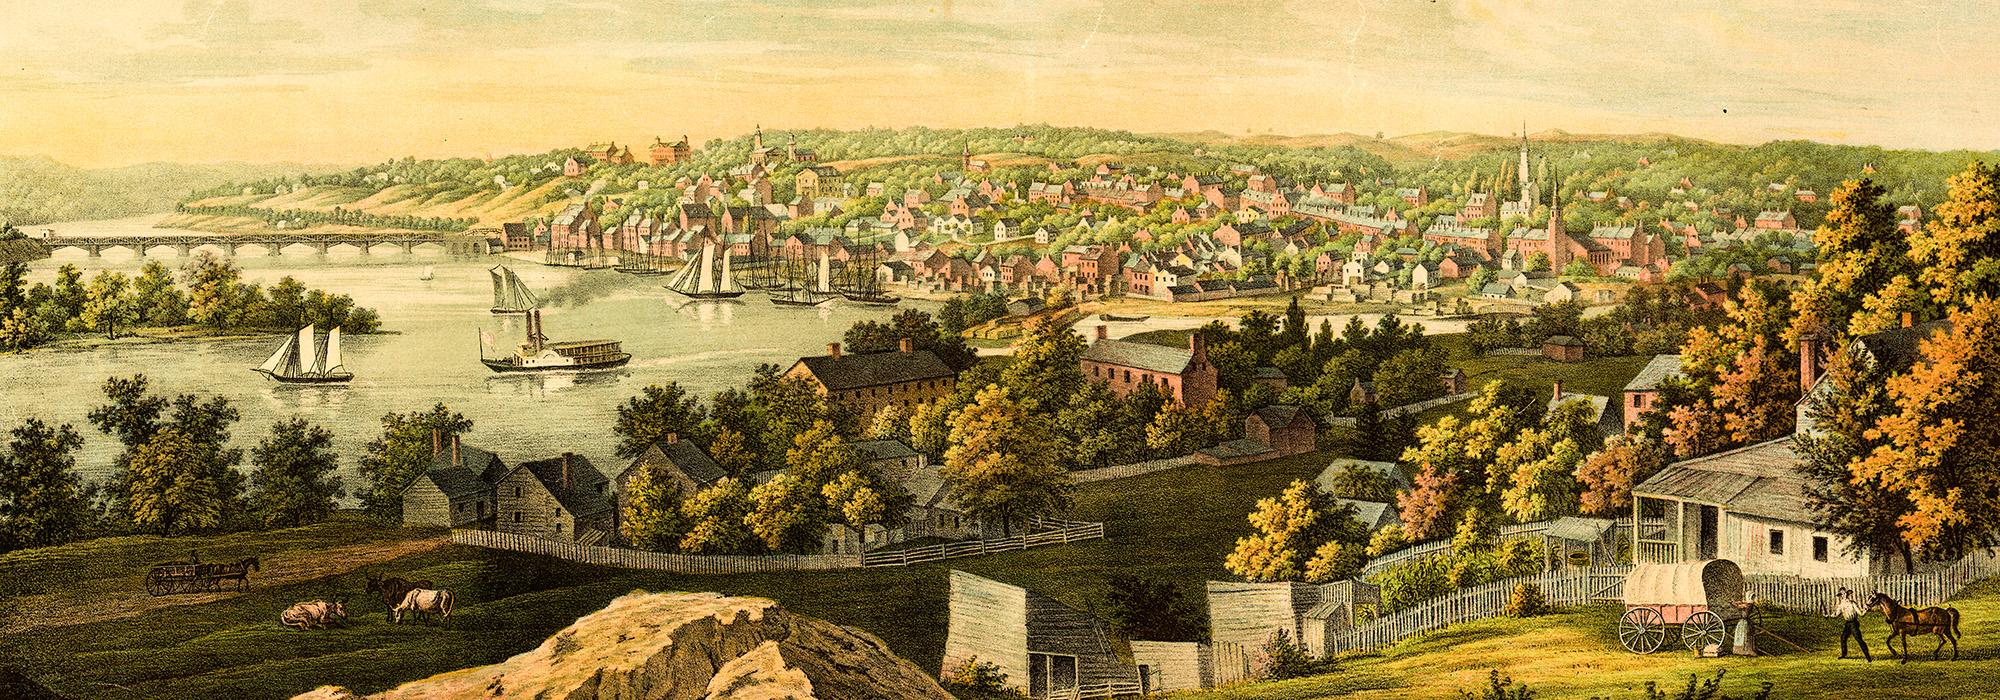 View of Georgetown D.C., Washington, D.C.